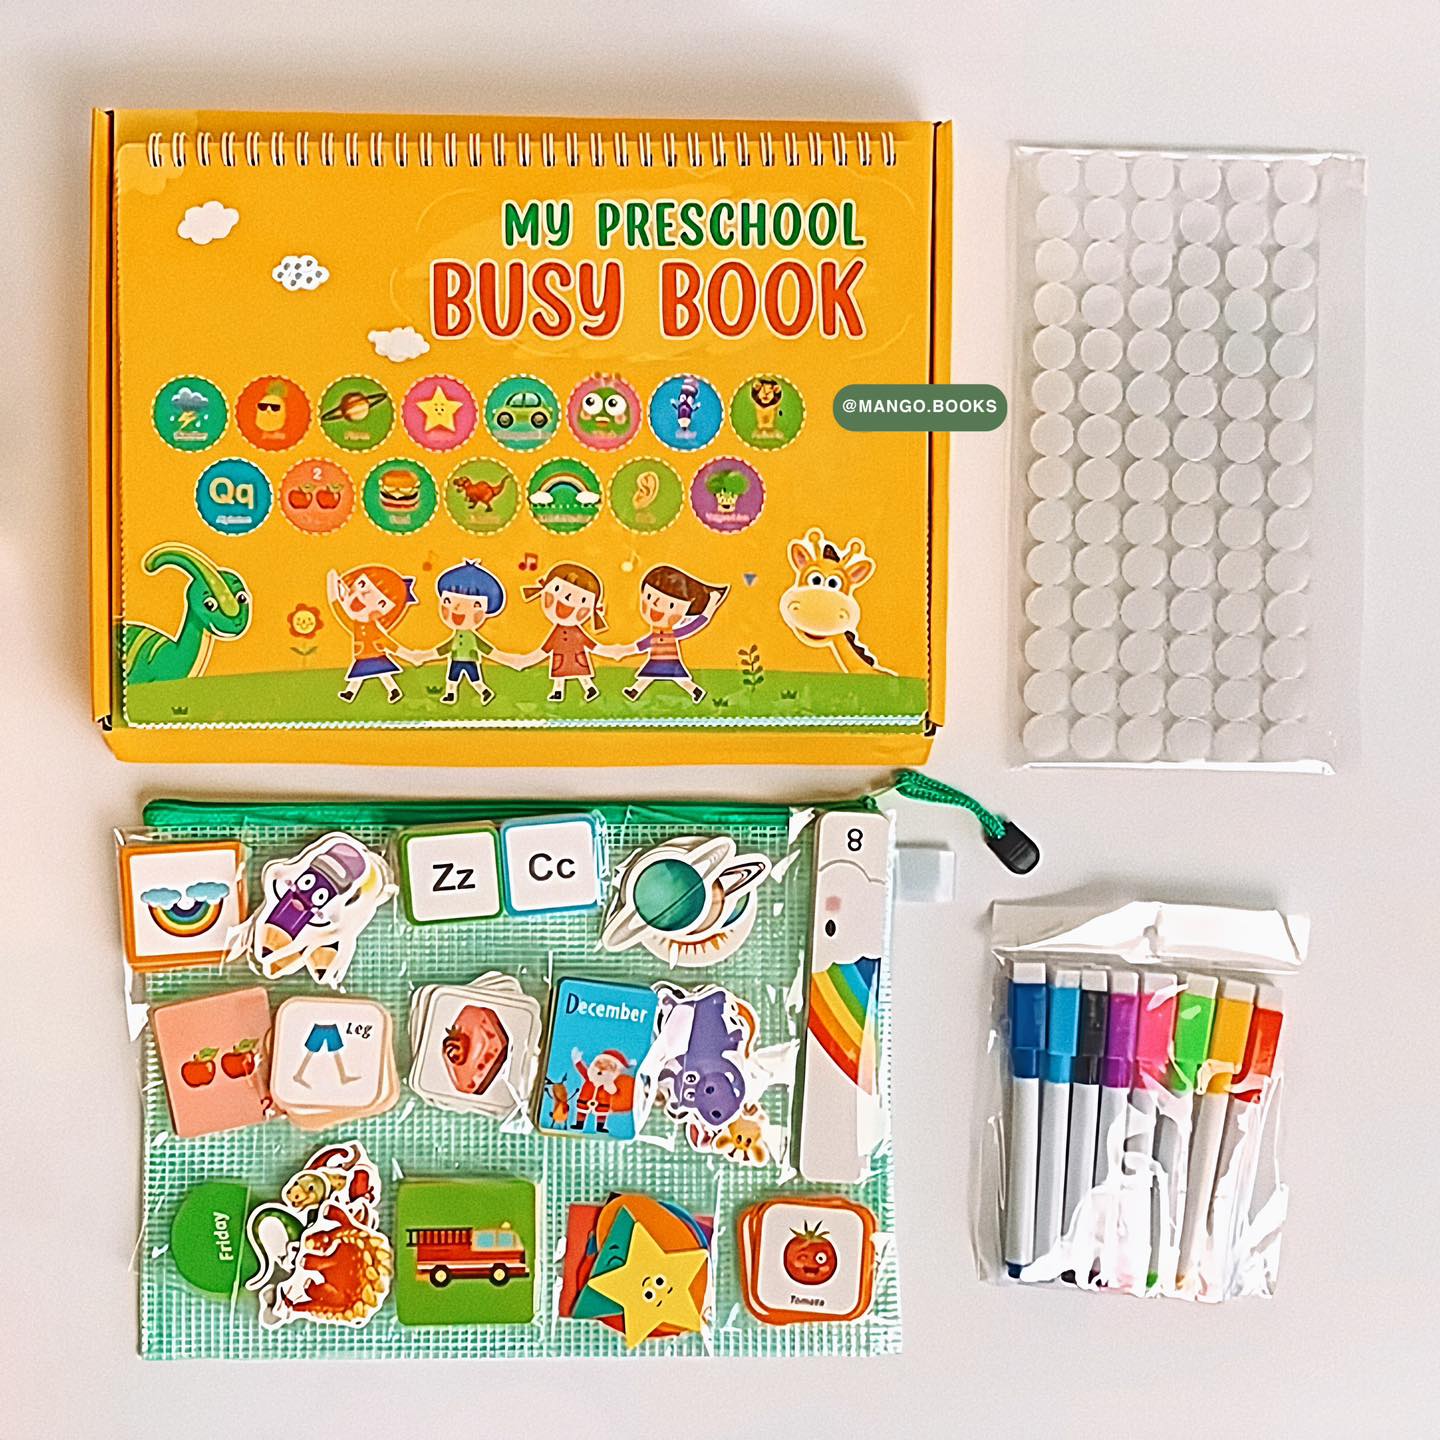 Busy Book - My Preschool & My Preschool Educational Game